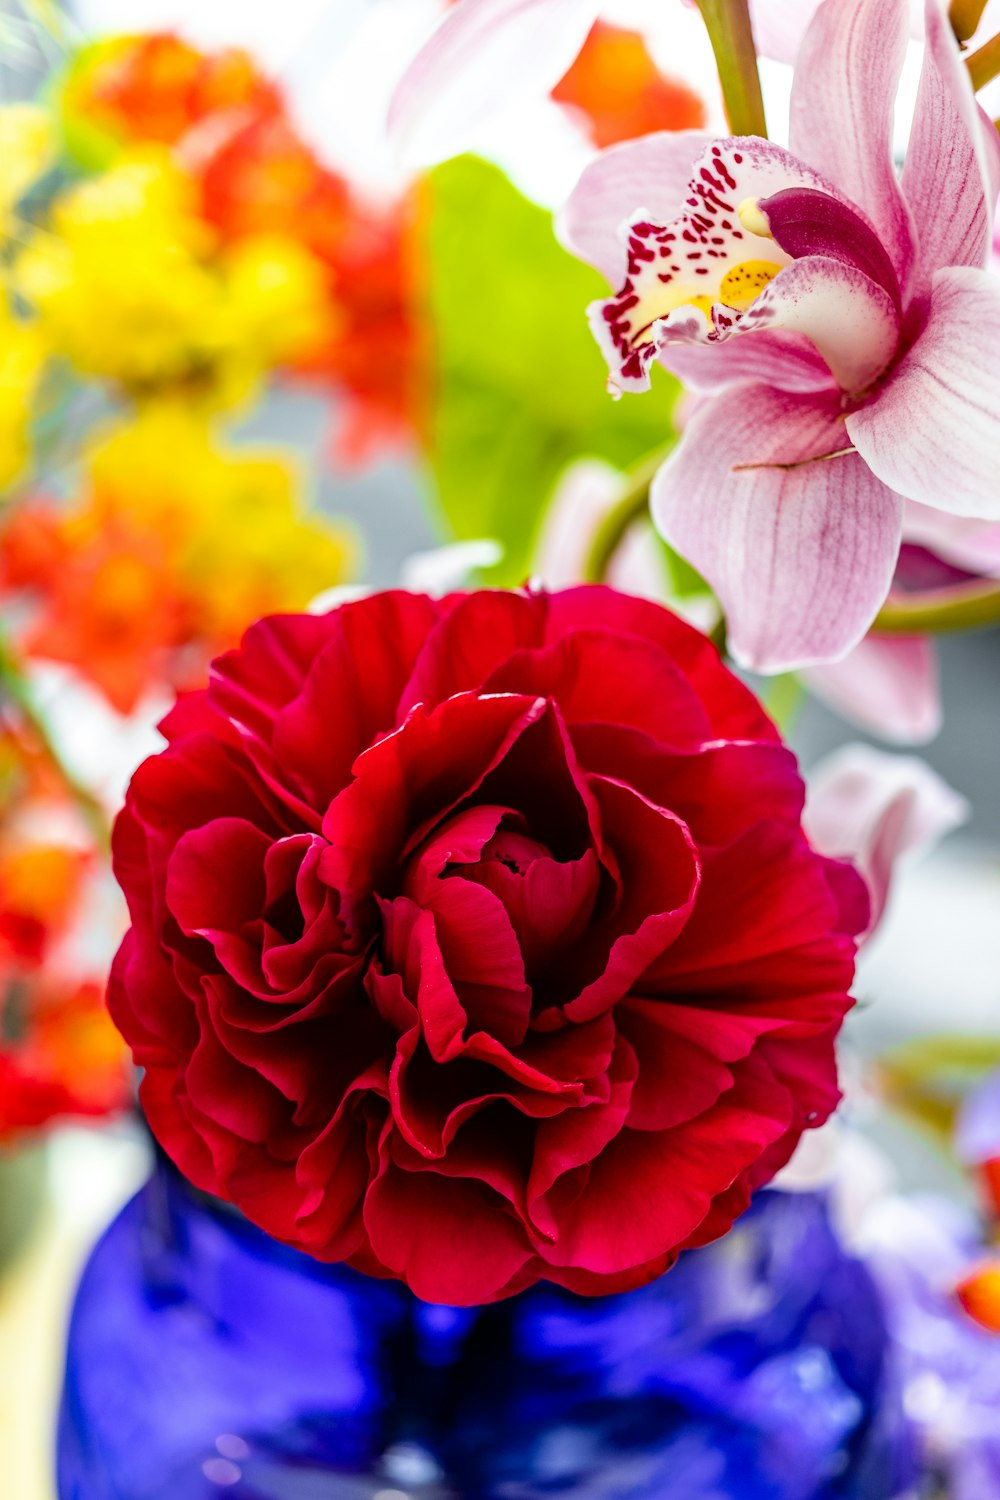 rose rouge en fleurs pendant la journée